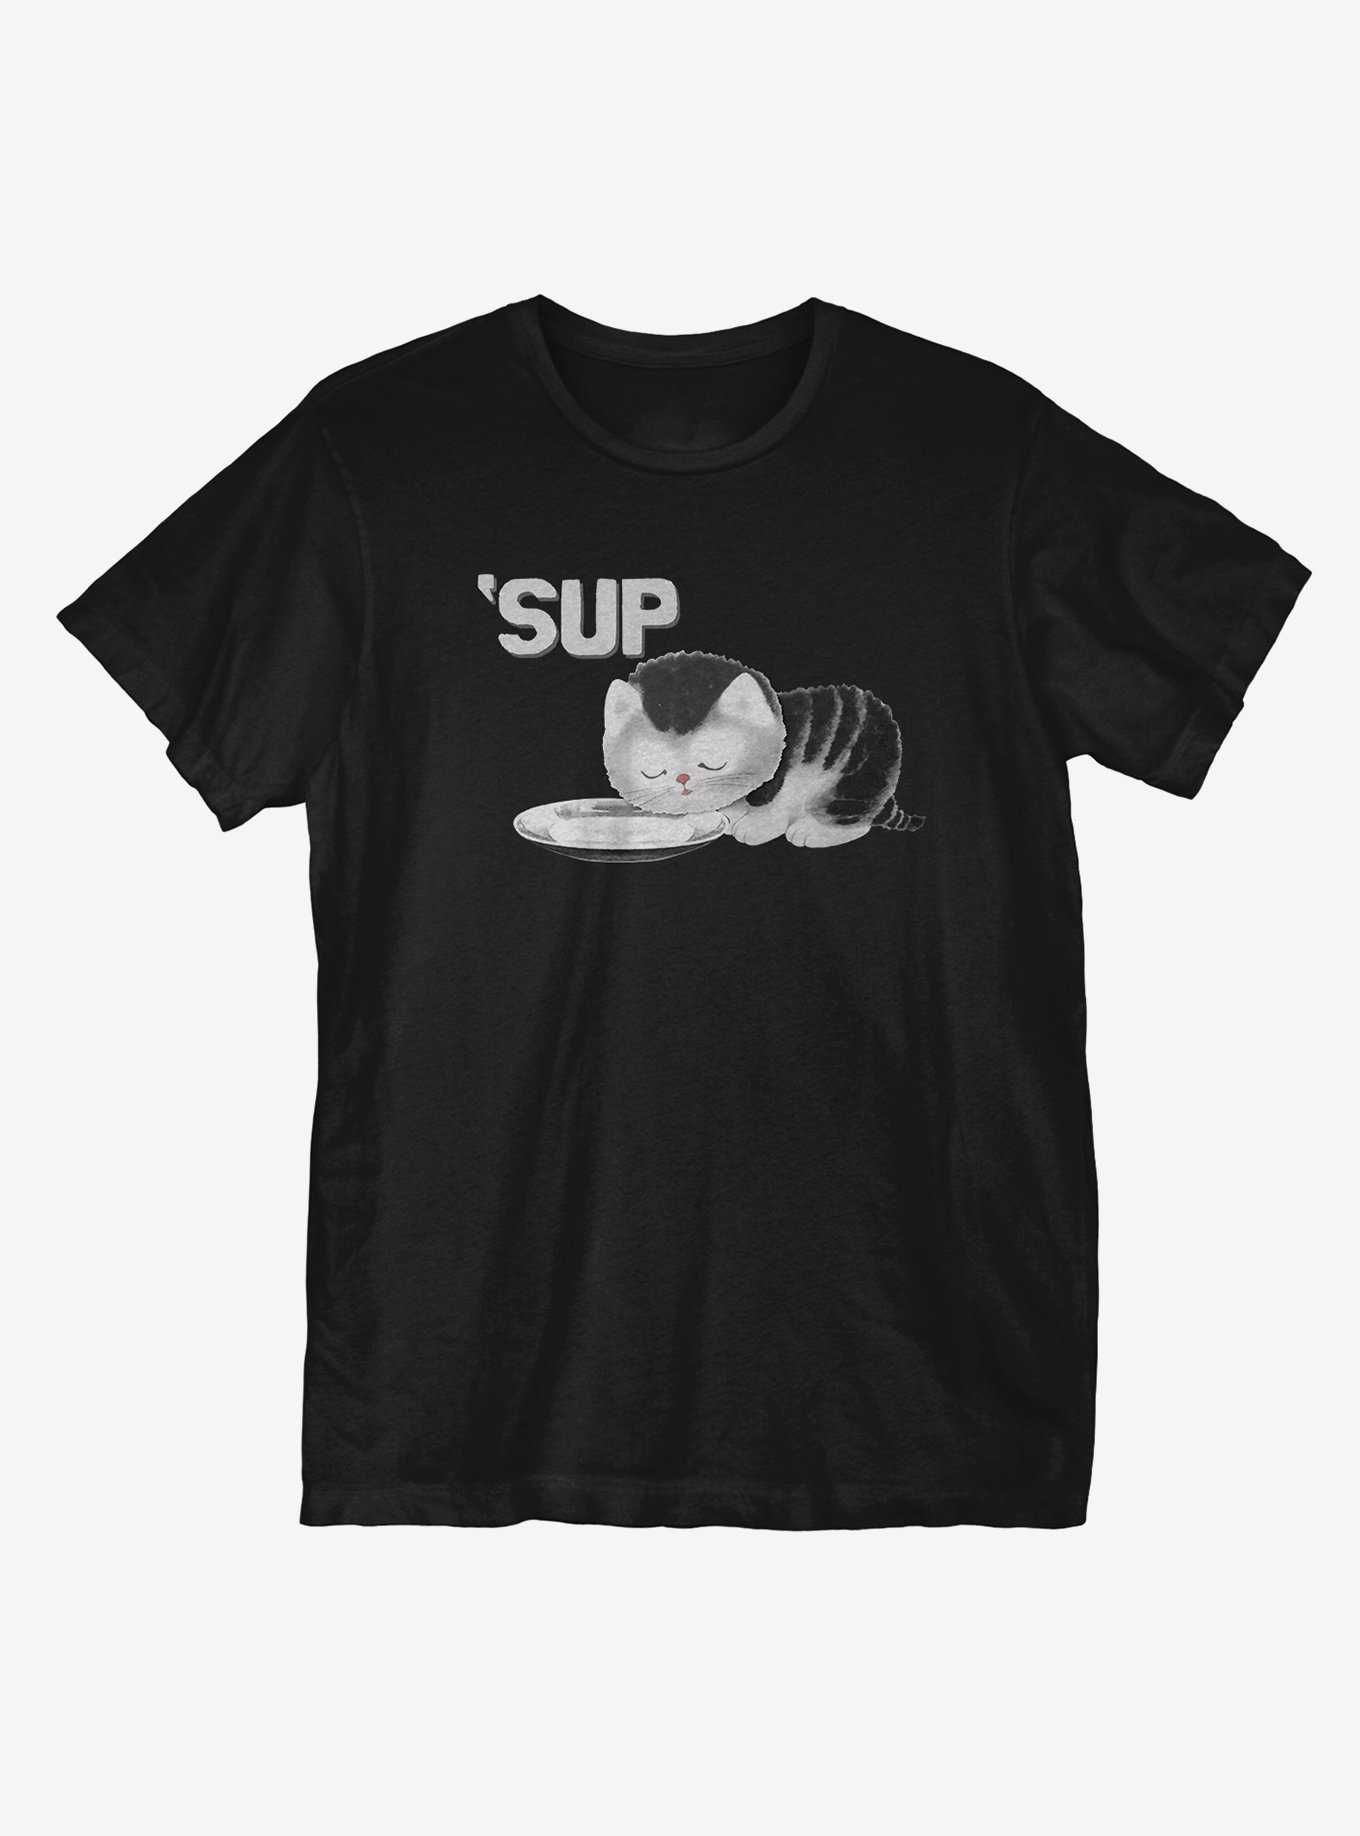 Sup T-Shirt, , hi-res